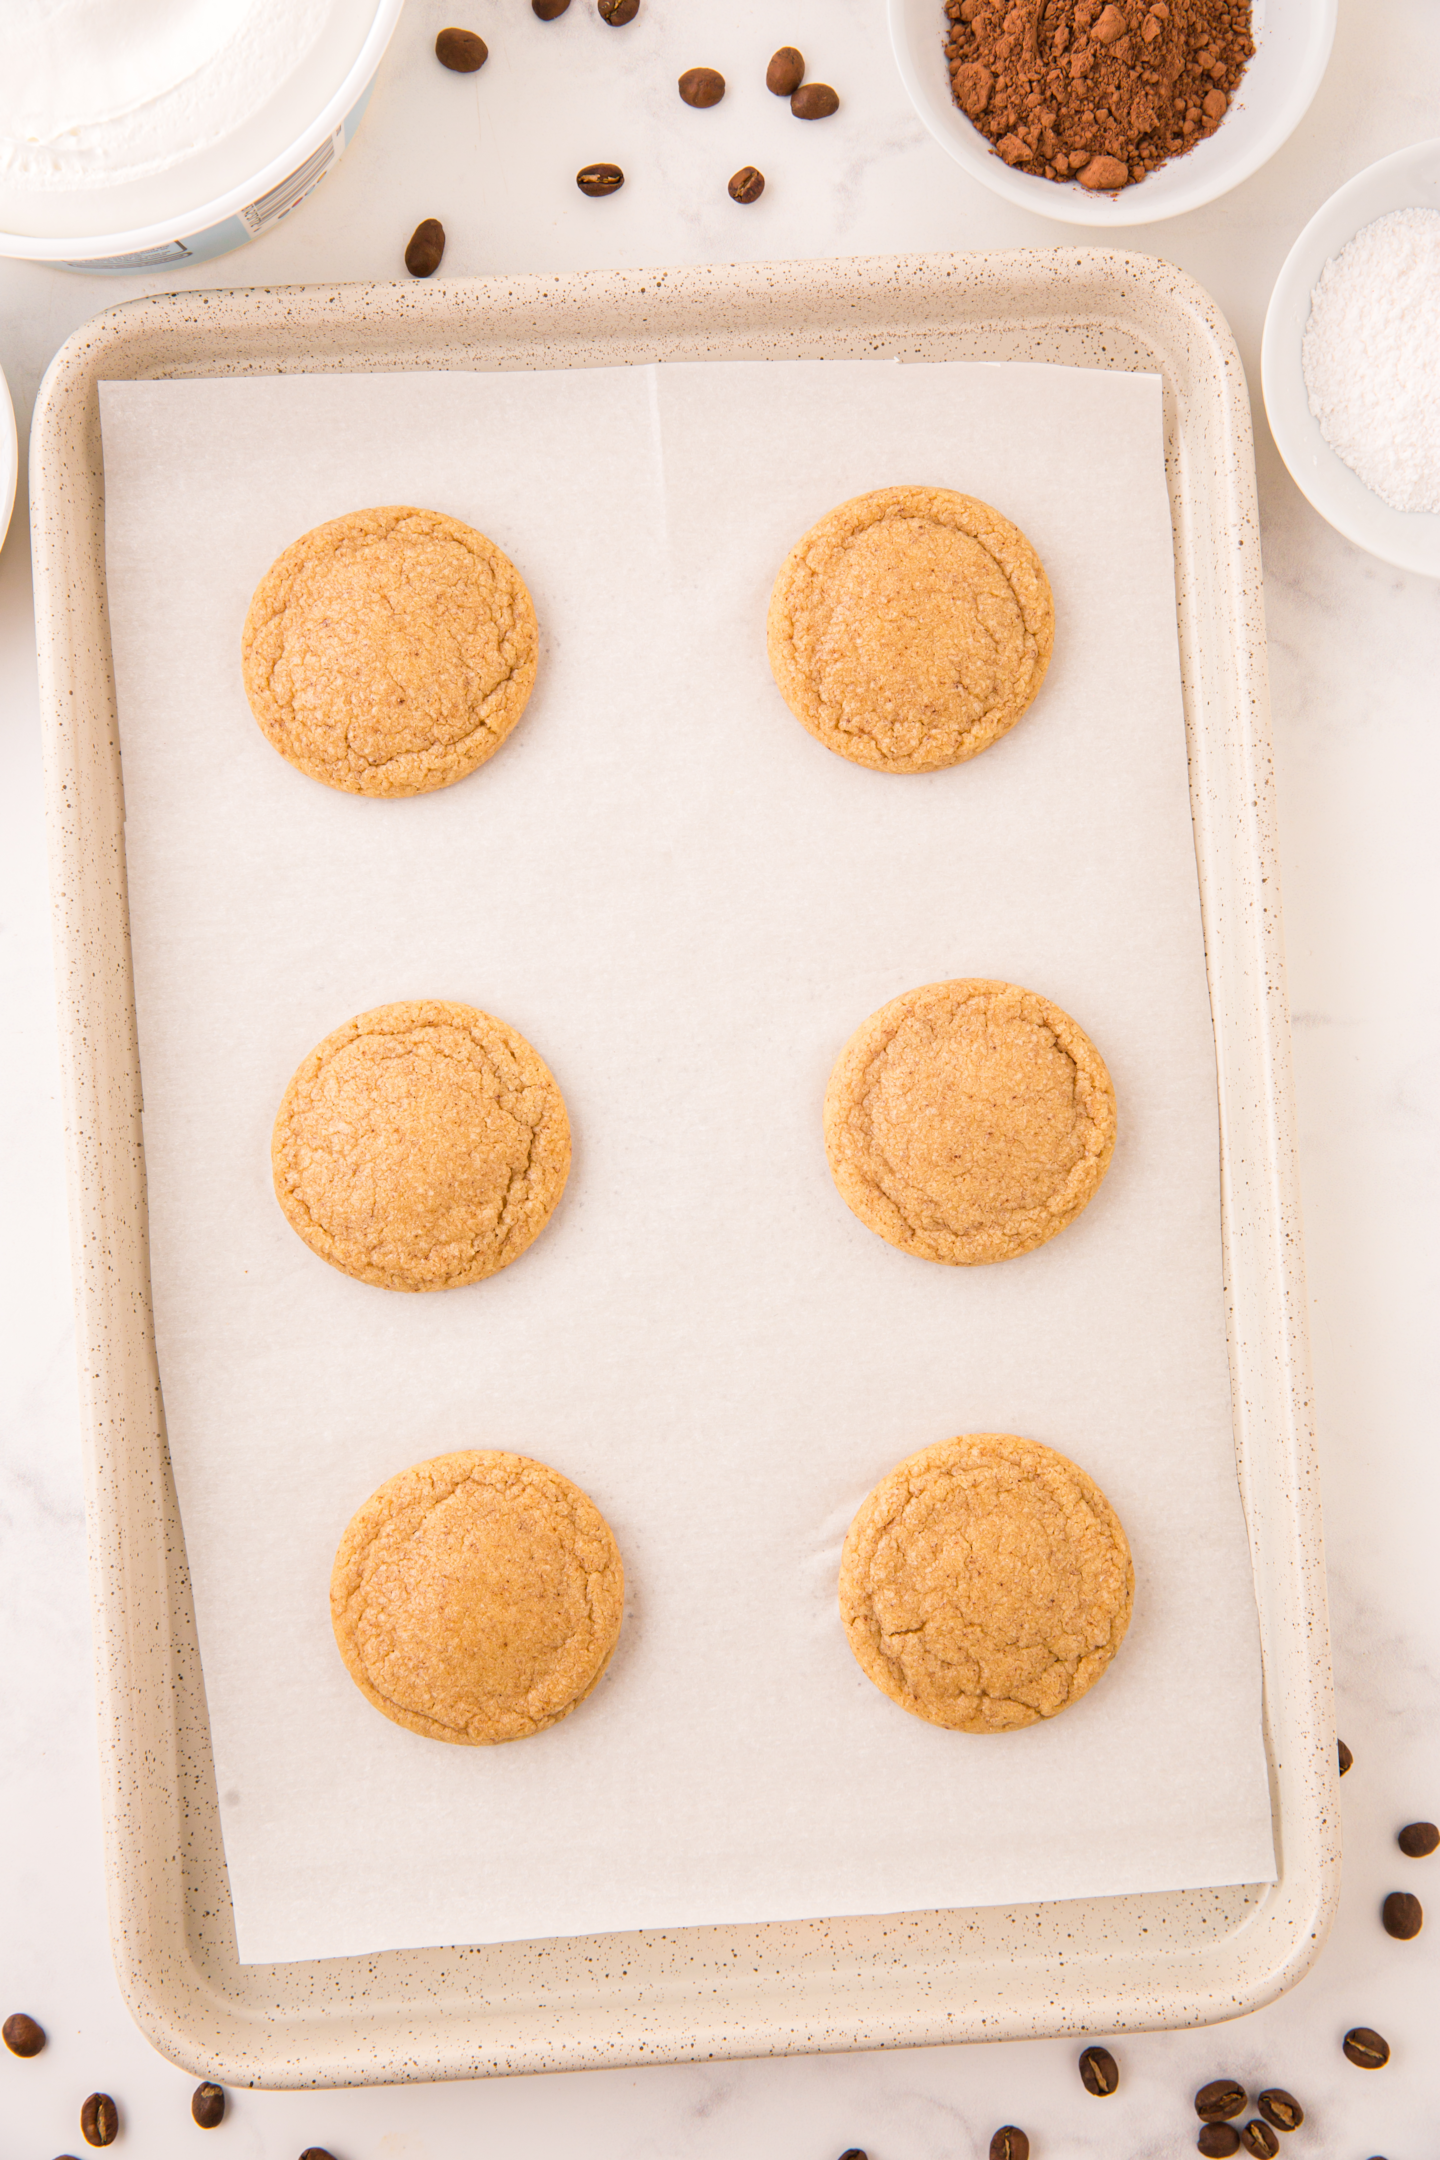 six baked Tiramisu cookies